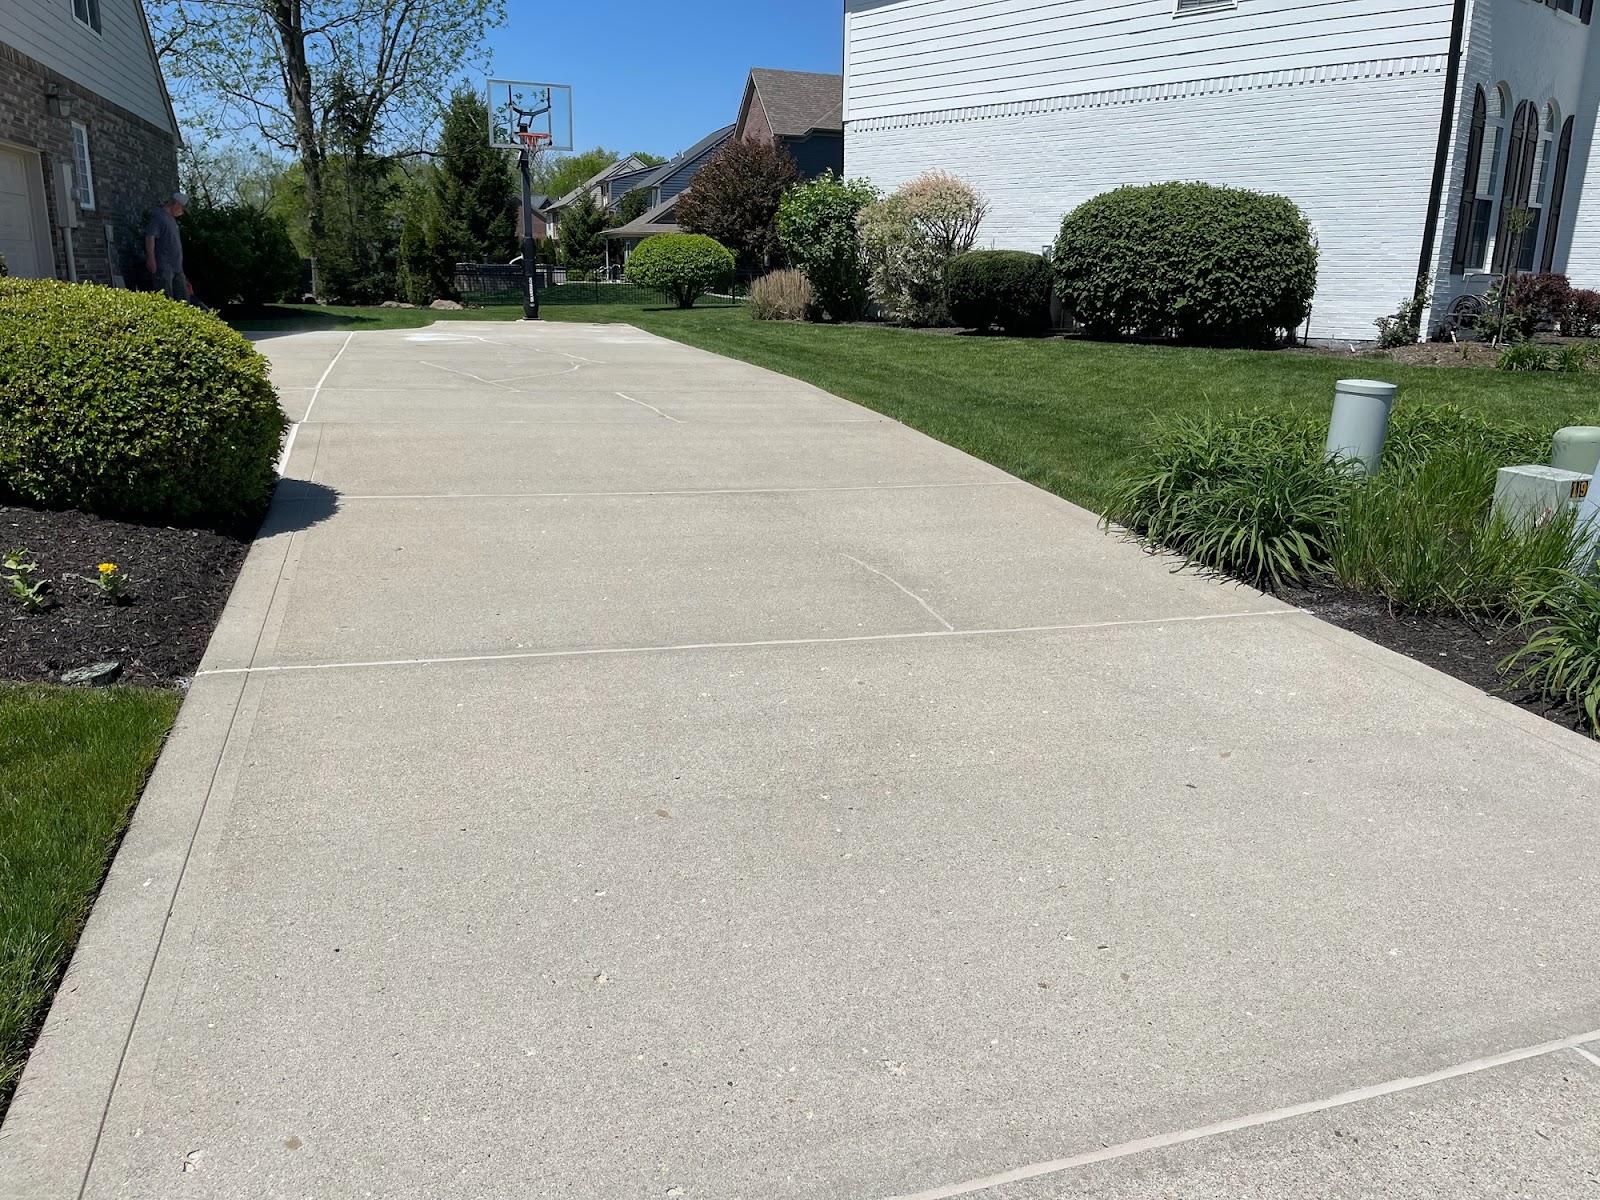 Residential concrete repair driveway